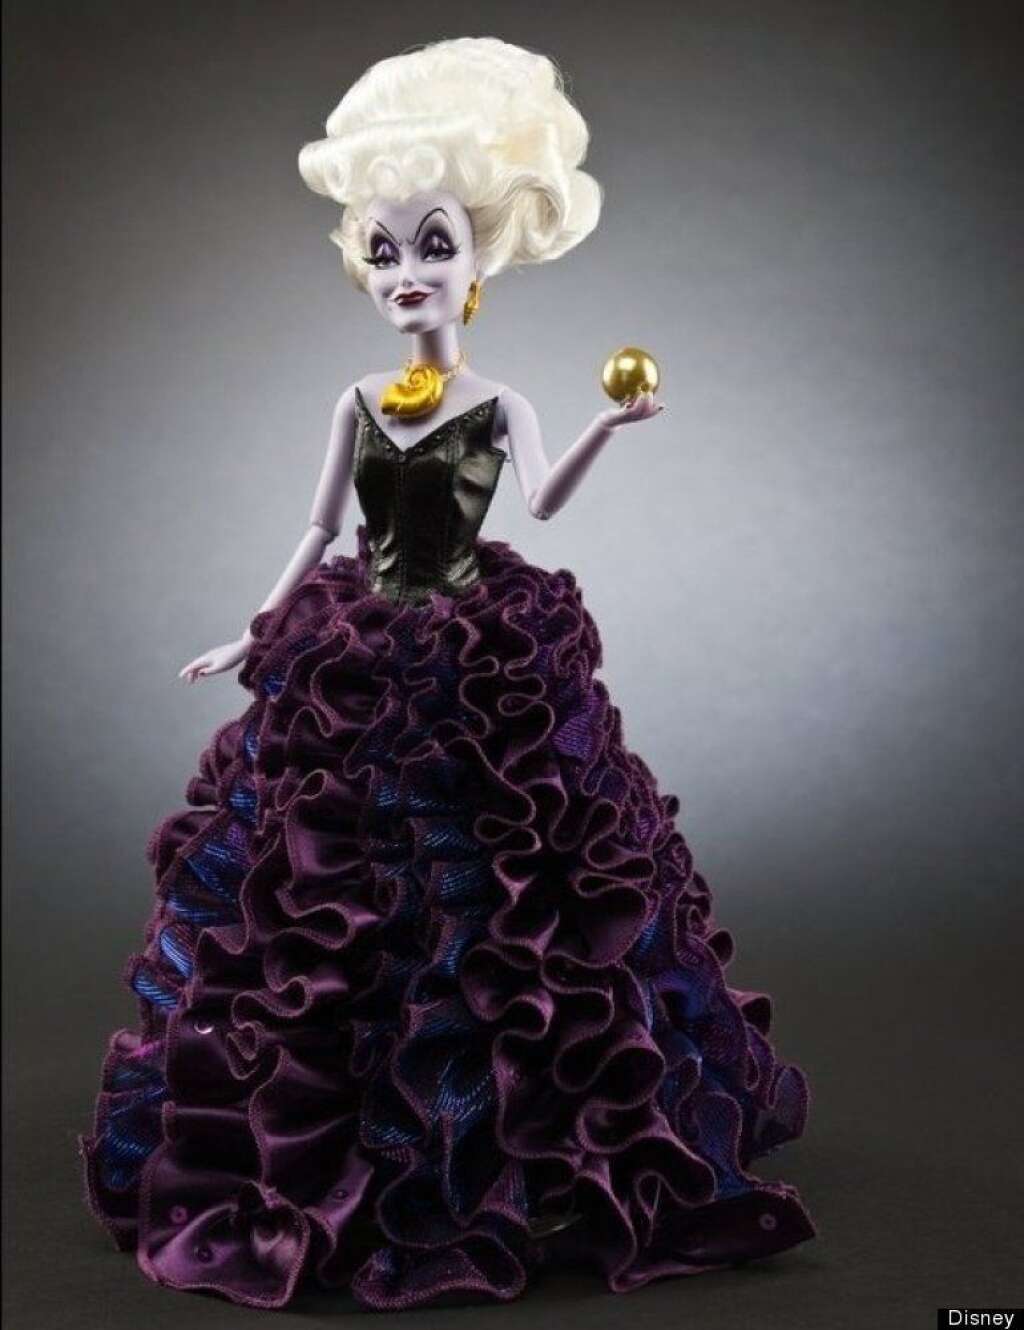 Ursula Designer Doll - via <a href="http://pinterest.com/pin/72831718944510638/" target="_hplink">Pinterest</a>